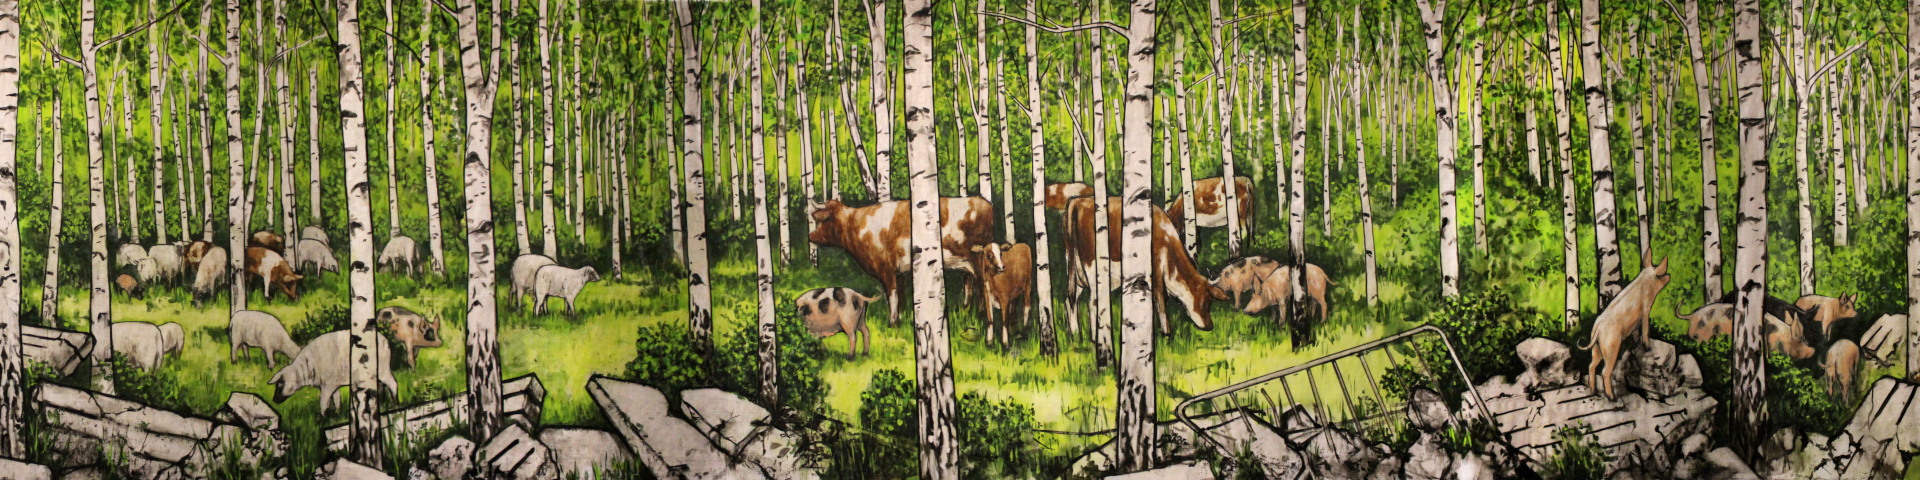 Gemälde: Wiese von Hartmuth Kiewert – Tiere im Wald zwischen Ruinen